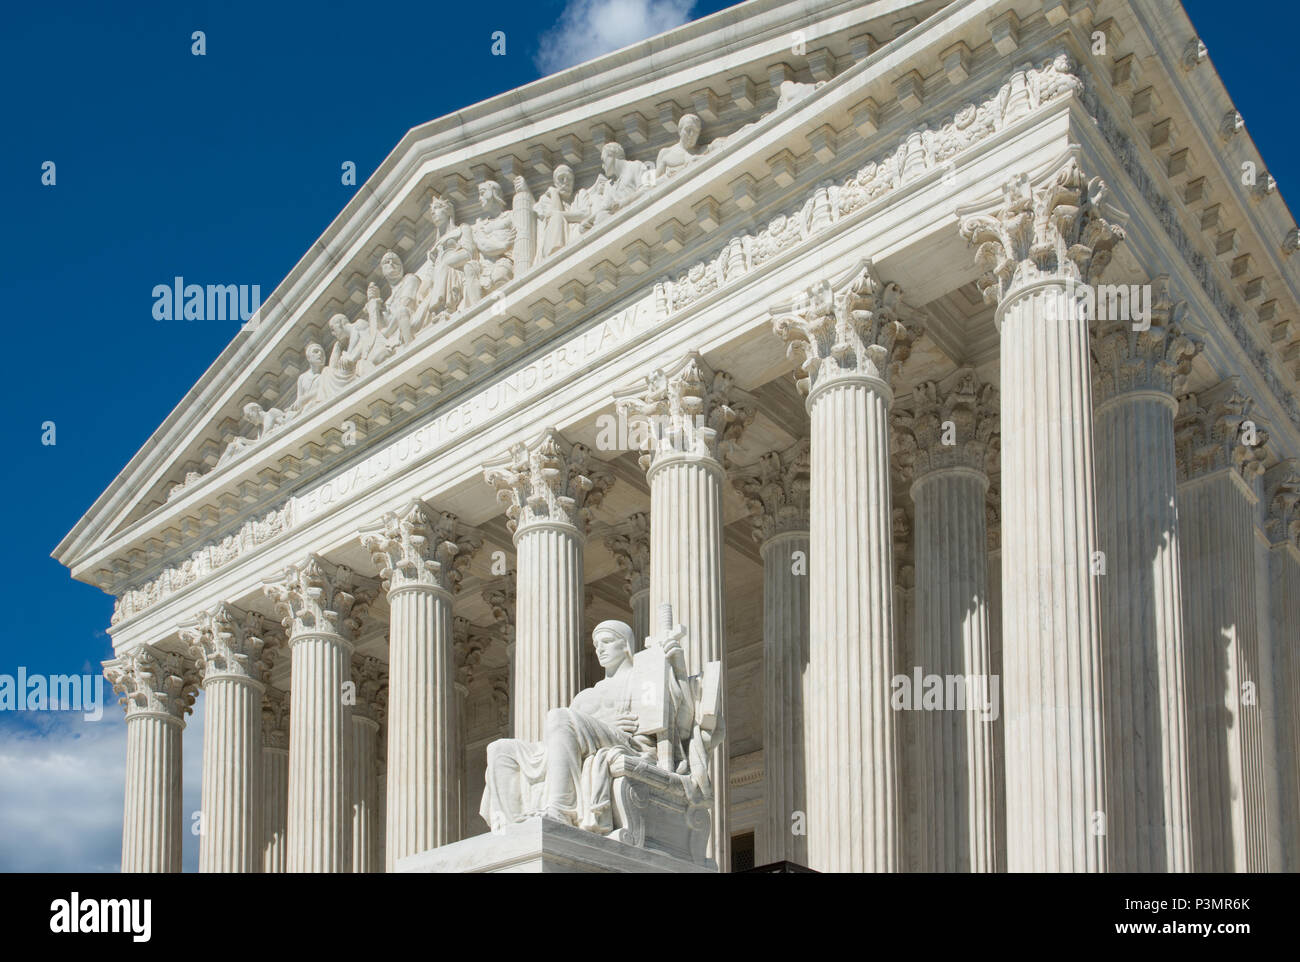 El edificio de la Corte Suprema es la sede de la Corte Suprema de Justicia  de la Rama Judicial de los Estados Unidos de América. Terminado en 1935, se  encuentra en th